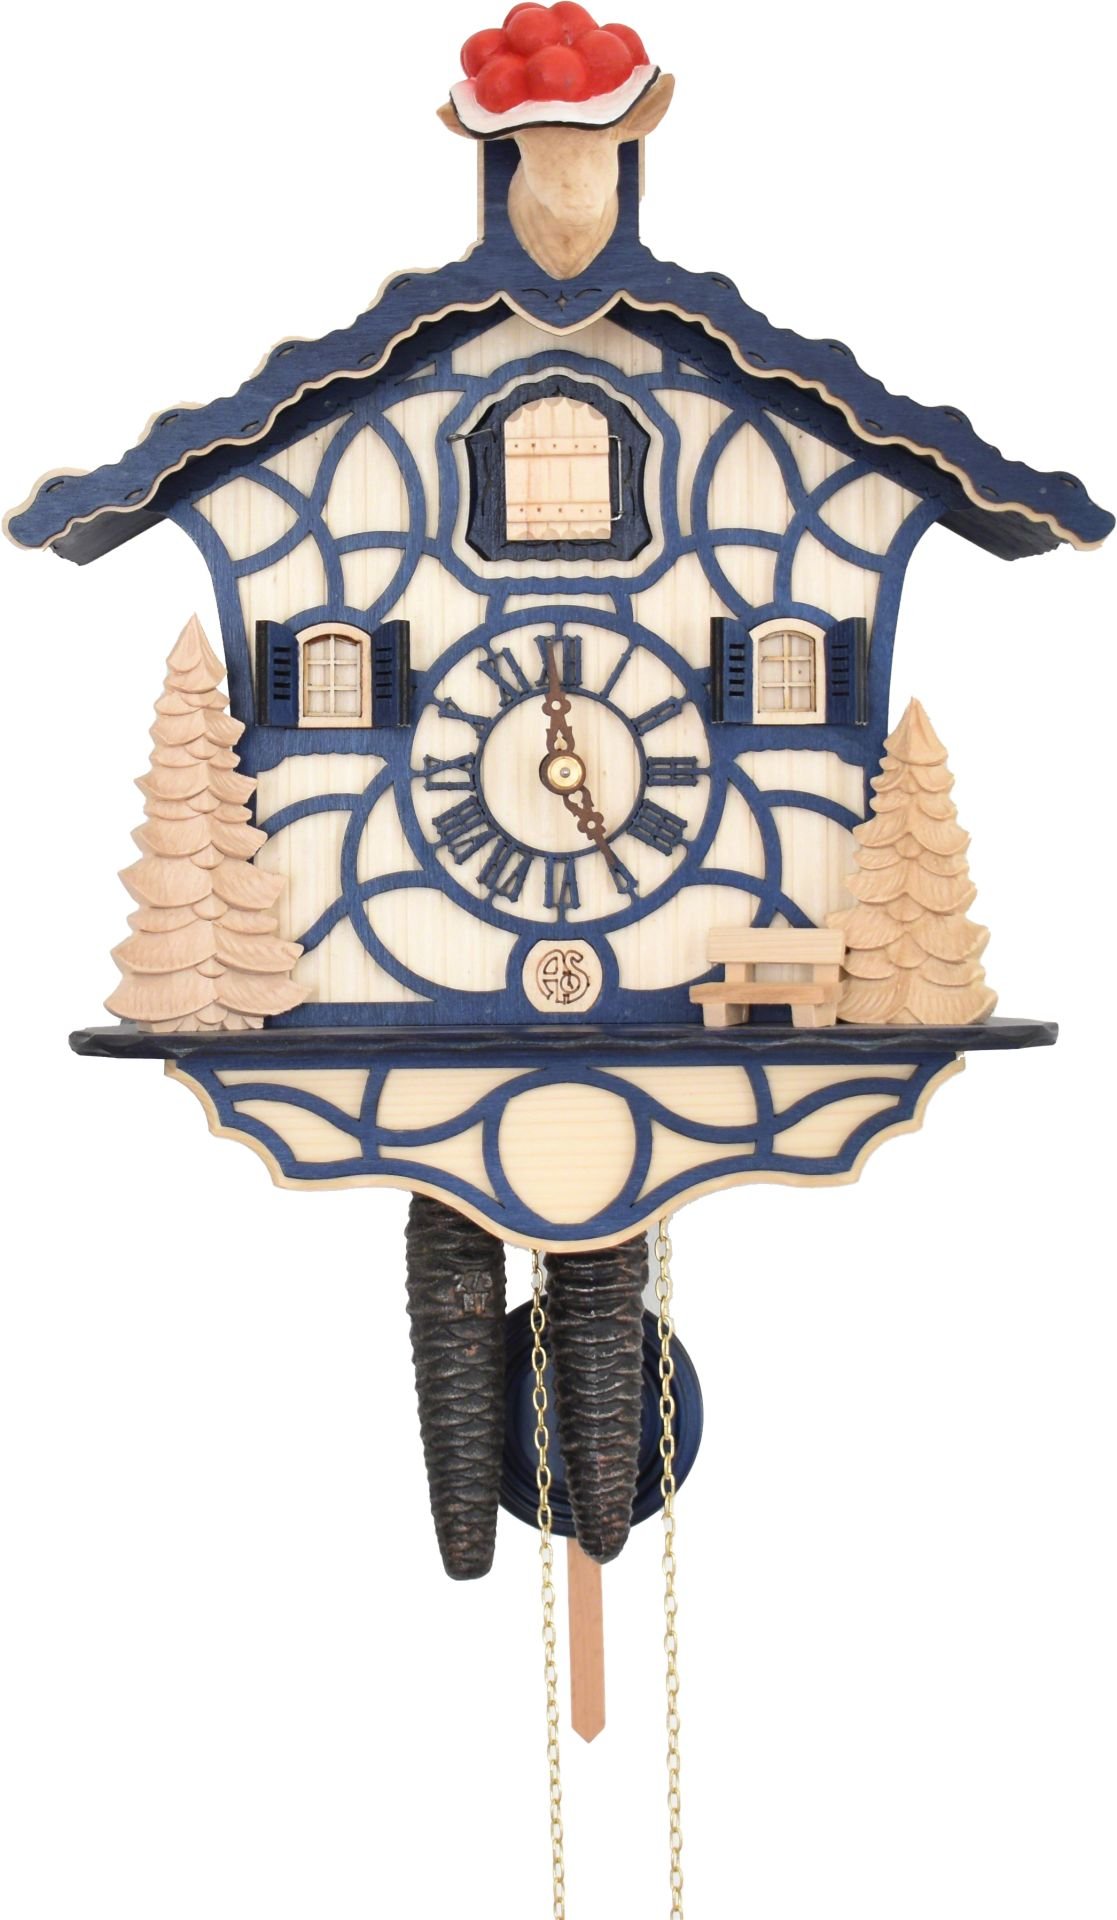 Kuckucksuhr Chalet-Stil 1-Tag-Uhrwerk 30cm von Anton Schneider